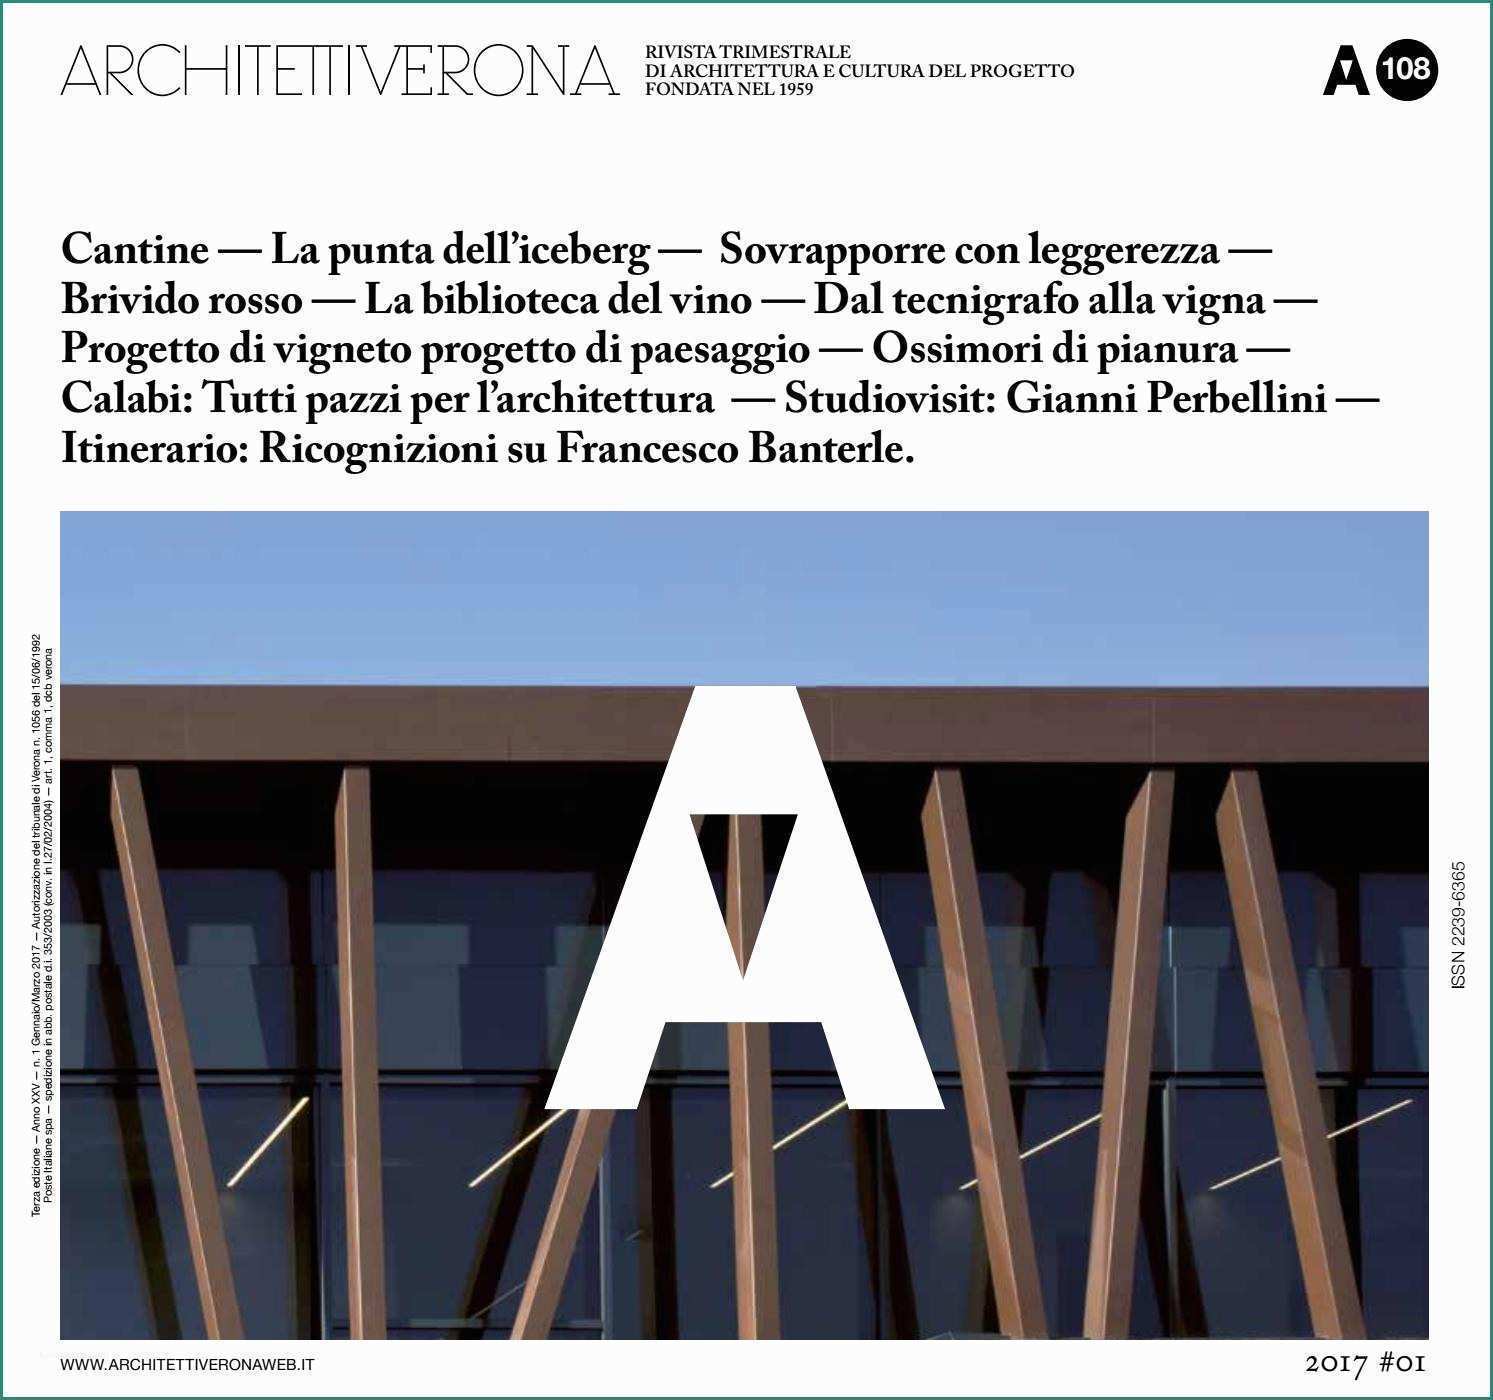 Esempio Preventivo Rifacimento Tetto E Architettiverona 108 by Architettiverona issuu